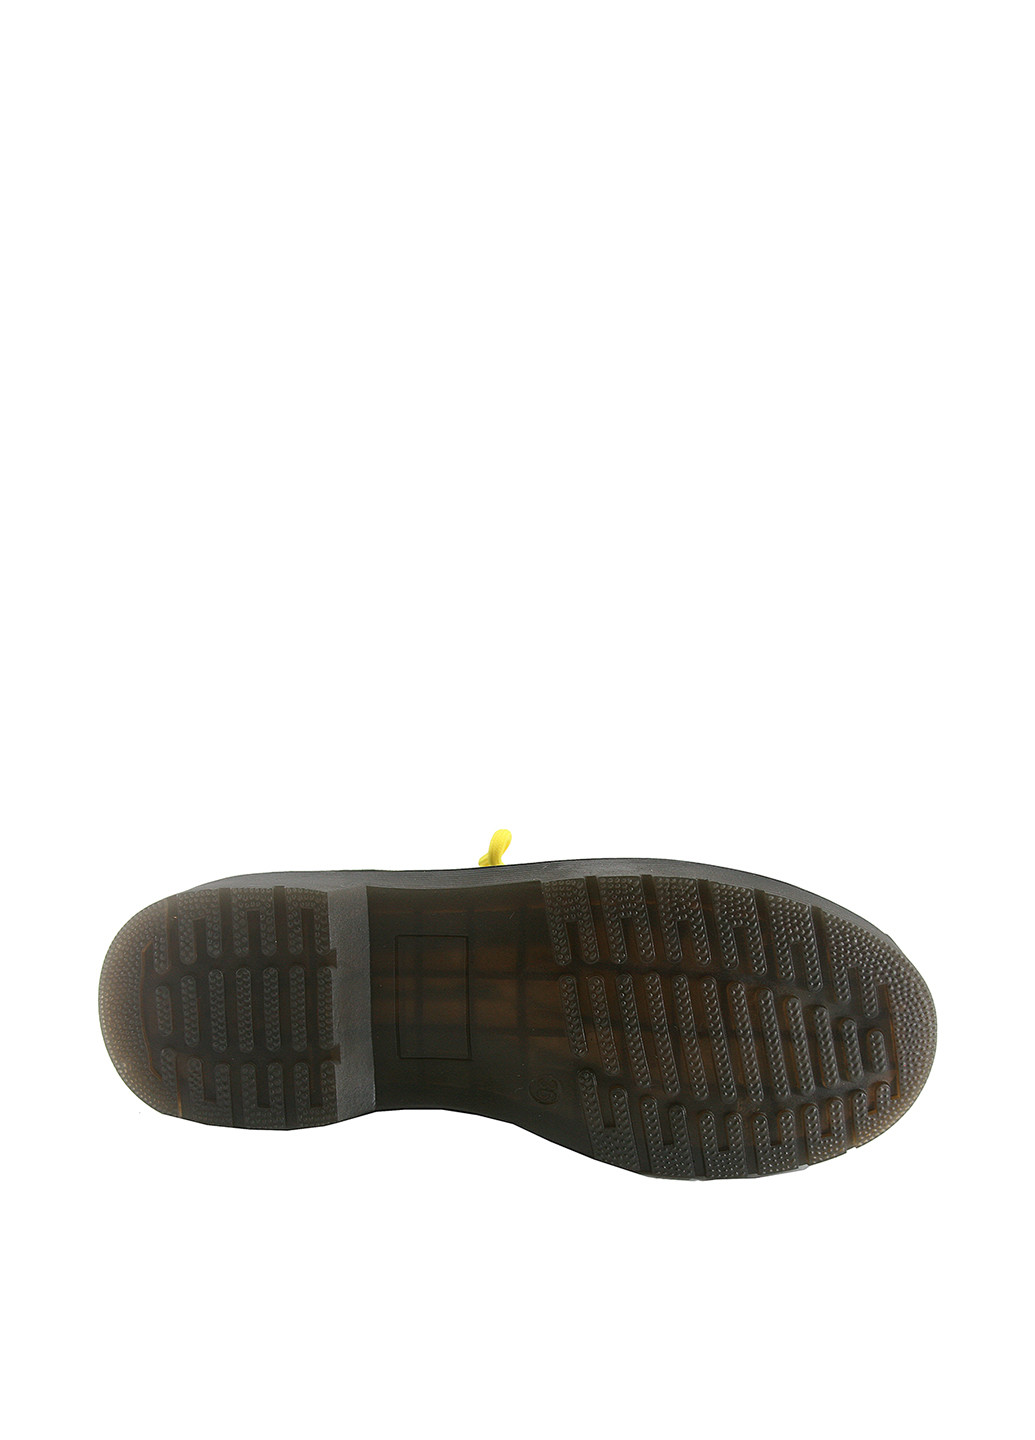 Осенние ботинки ITTS со шнуровкой из натуральной замши